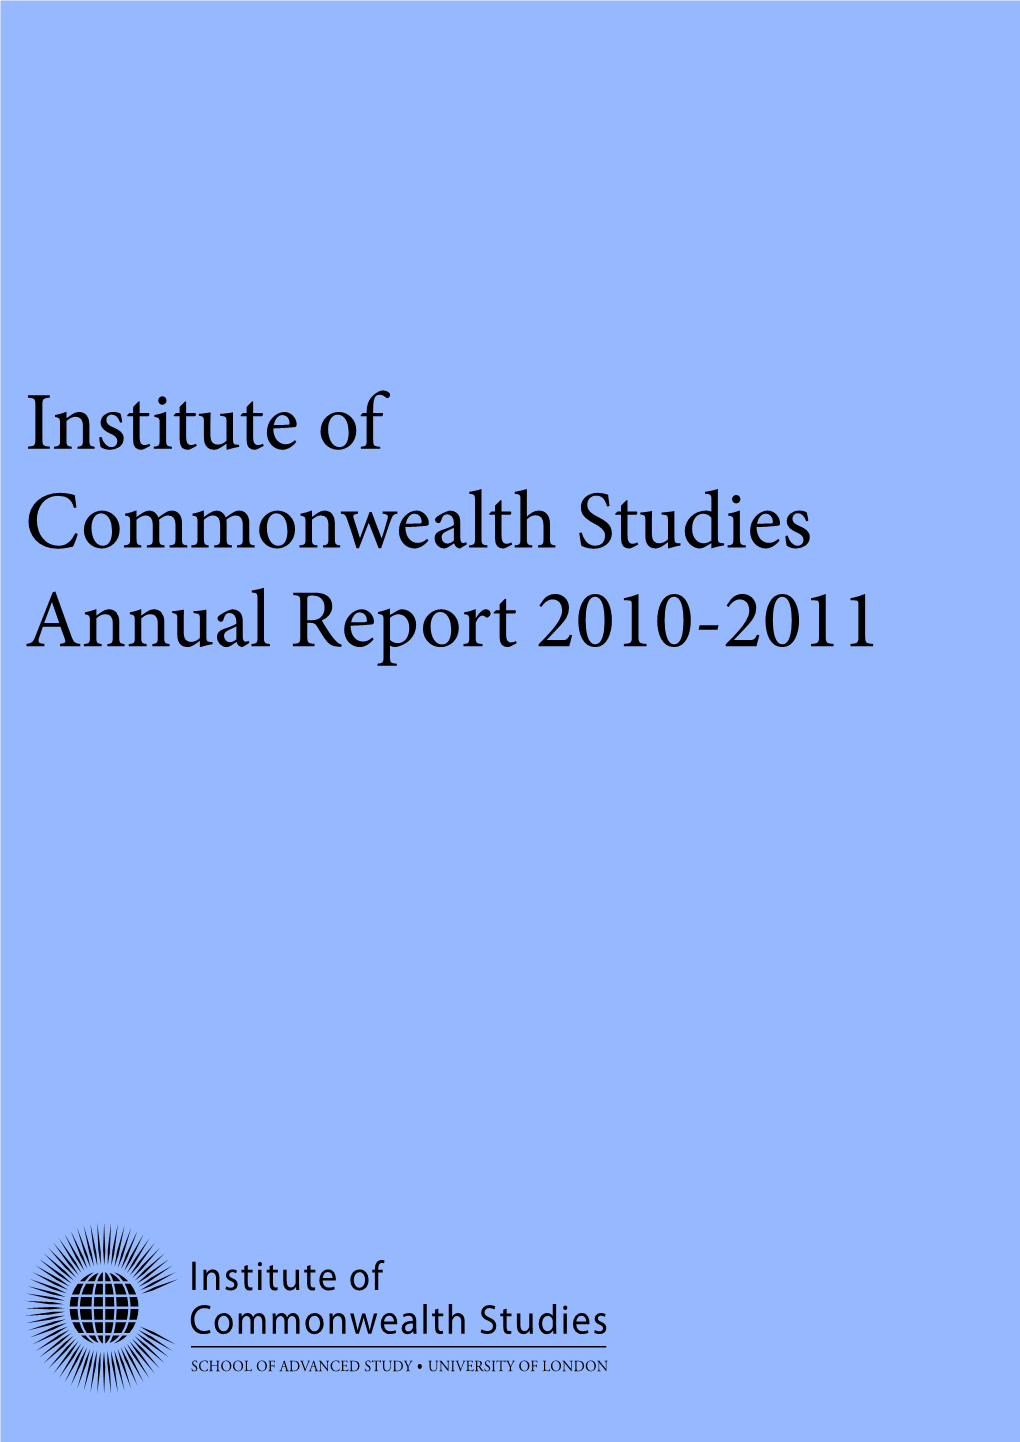 Institute of Commonwealth Studies Annual Report 2010-2011 About the Institute Institute of Commonwealth Studies Annual Report 2010-2011 Table of Contents